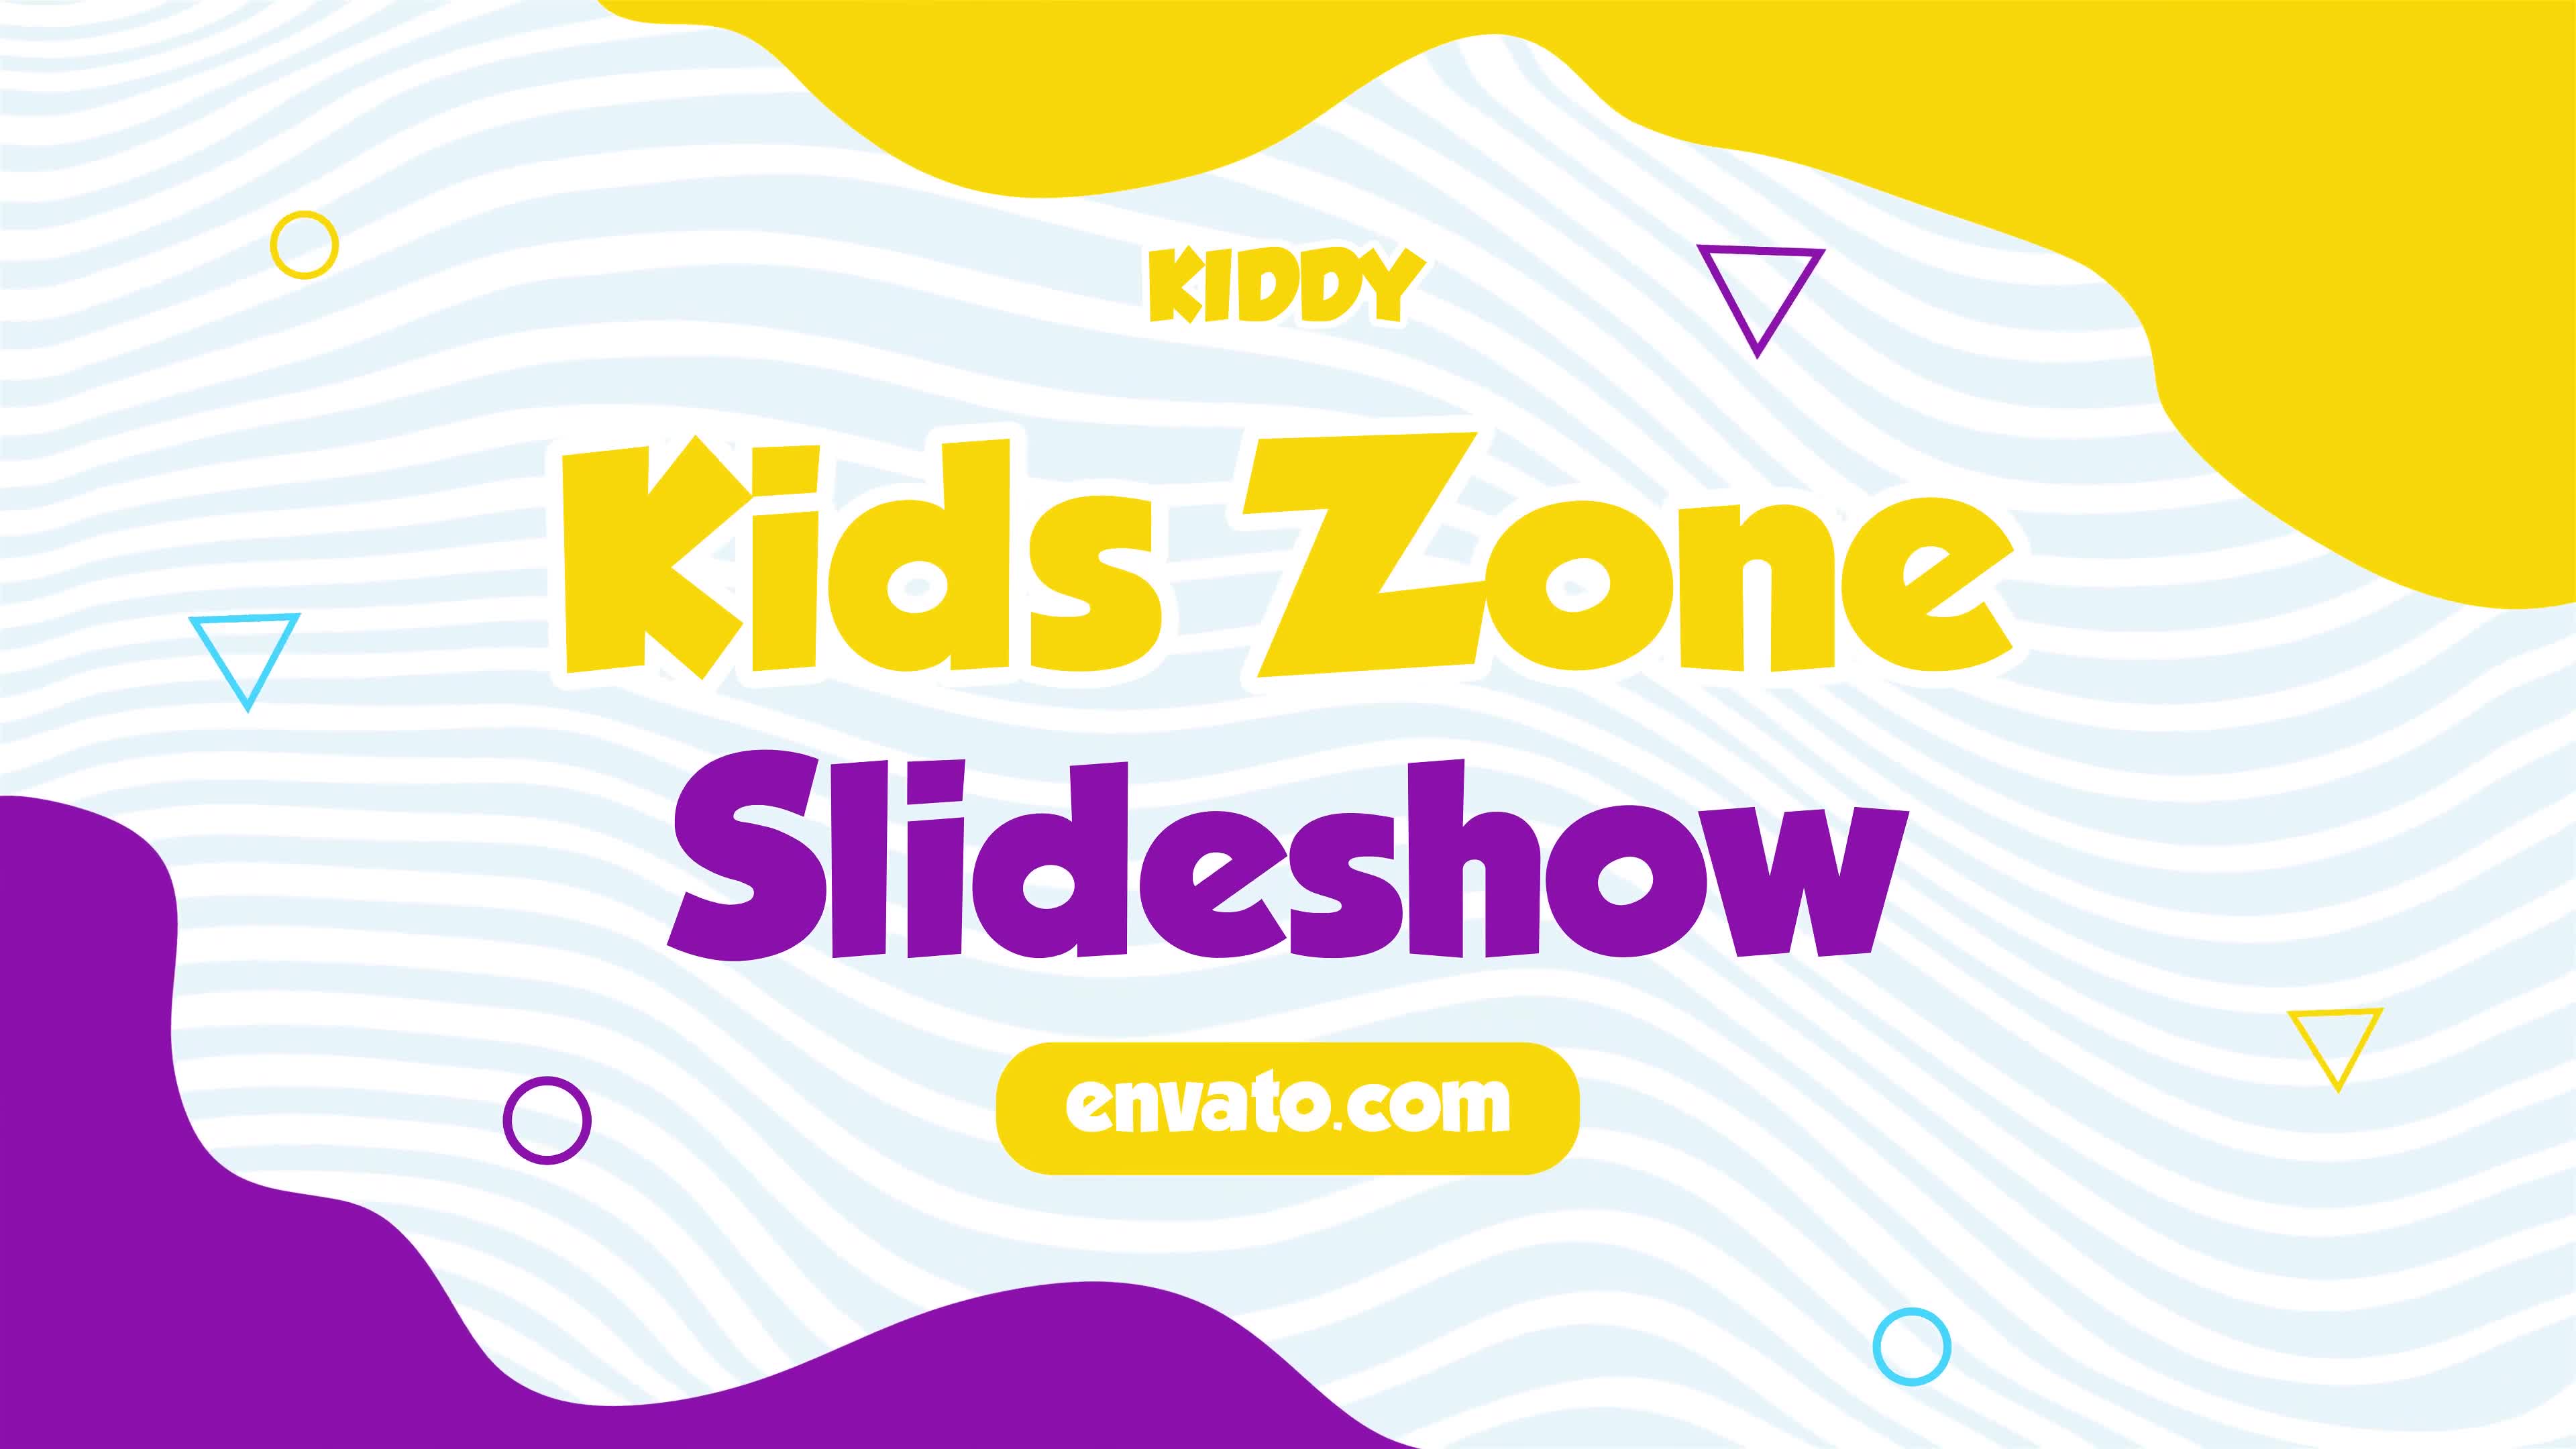 Kids Zone Slideshow | MOGRT Videohive 33124488 Premiere Pro Image 1